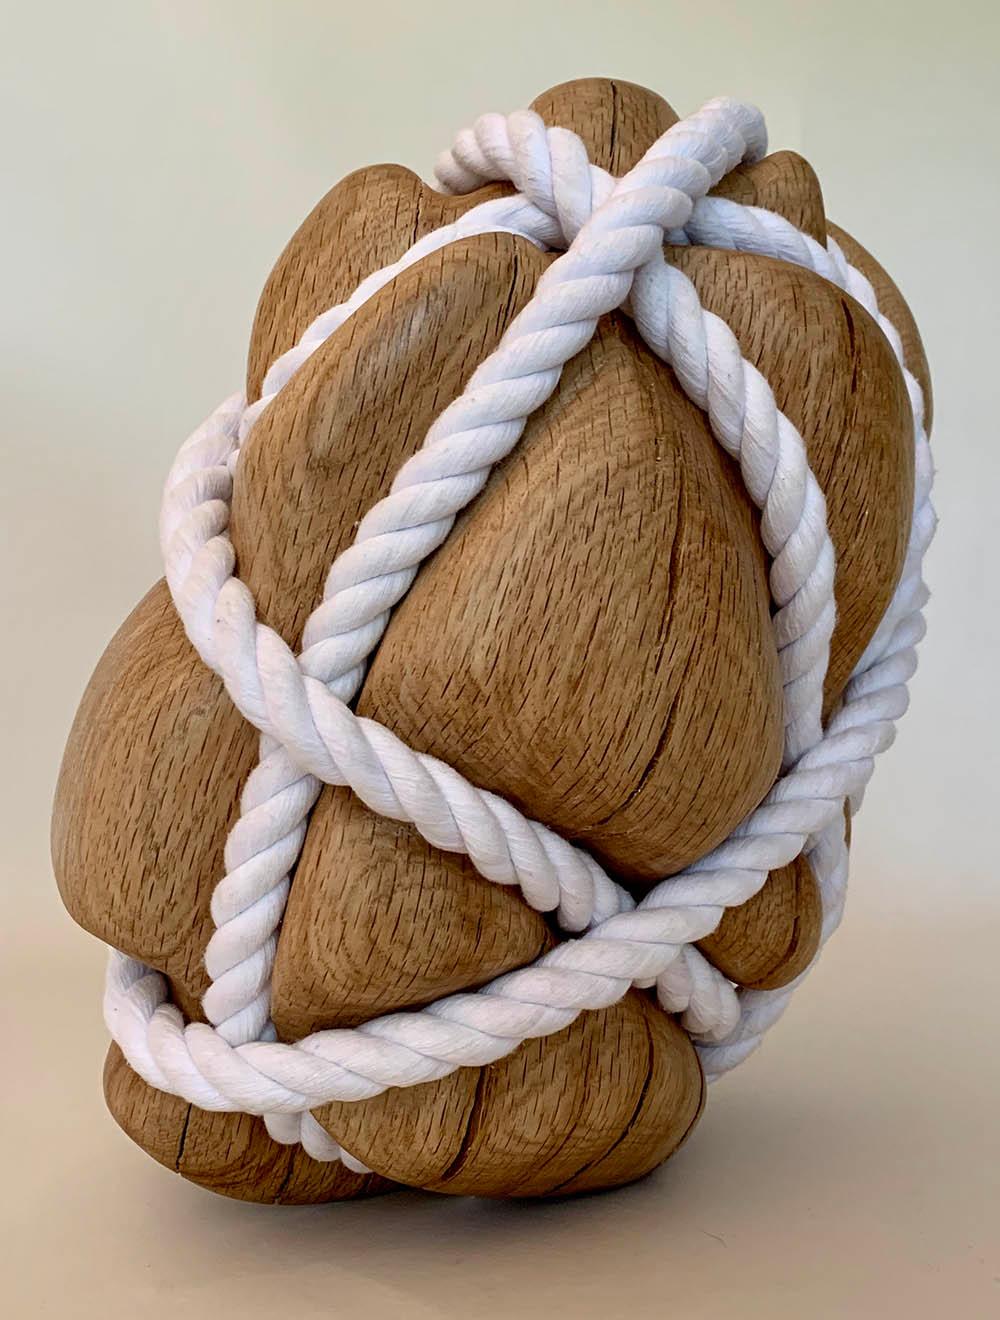 Bound Heart ist eine einzigartige Skulptur aus Eichenholz und Baumwollkordel des zeitgenössischen Künstlers Peter Brooke-Ball mit den Maßen 19 × 34 × 26 cm.  
Die Skulptur wird mit einem Echtheitszertifikat geliefert.

Dieses Werk stellt ein